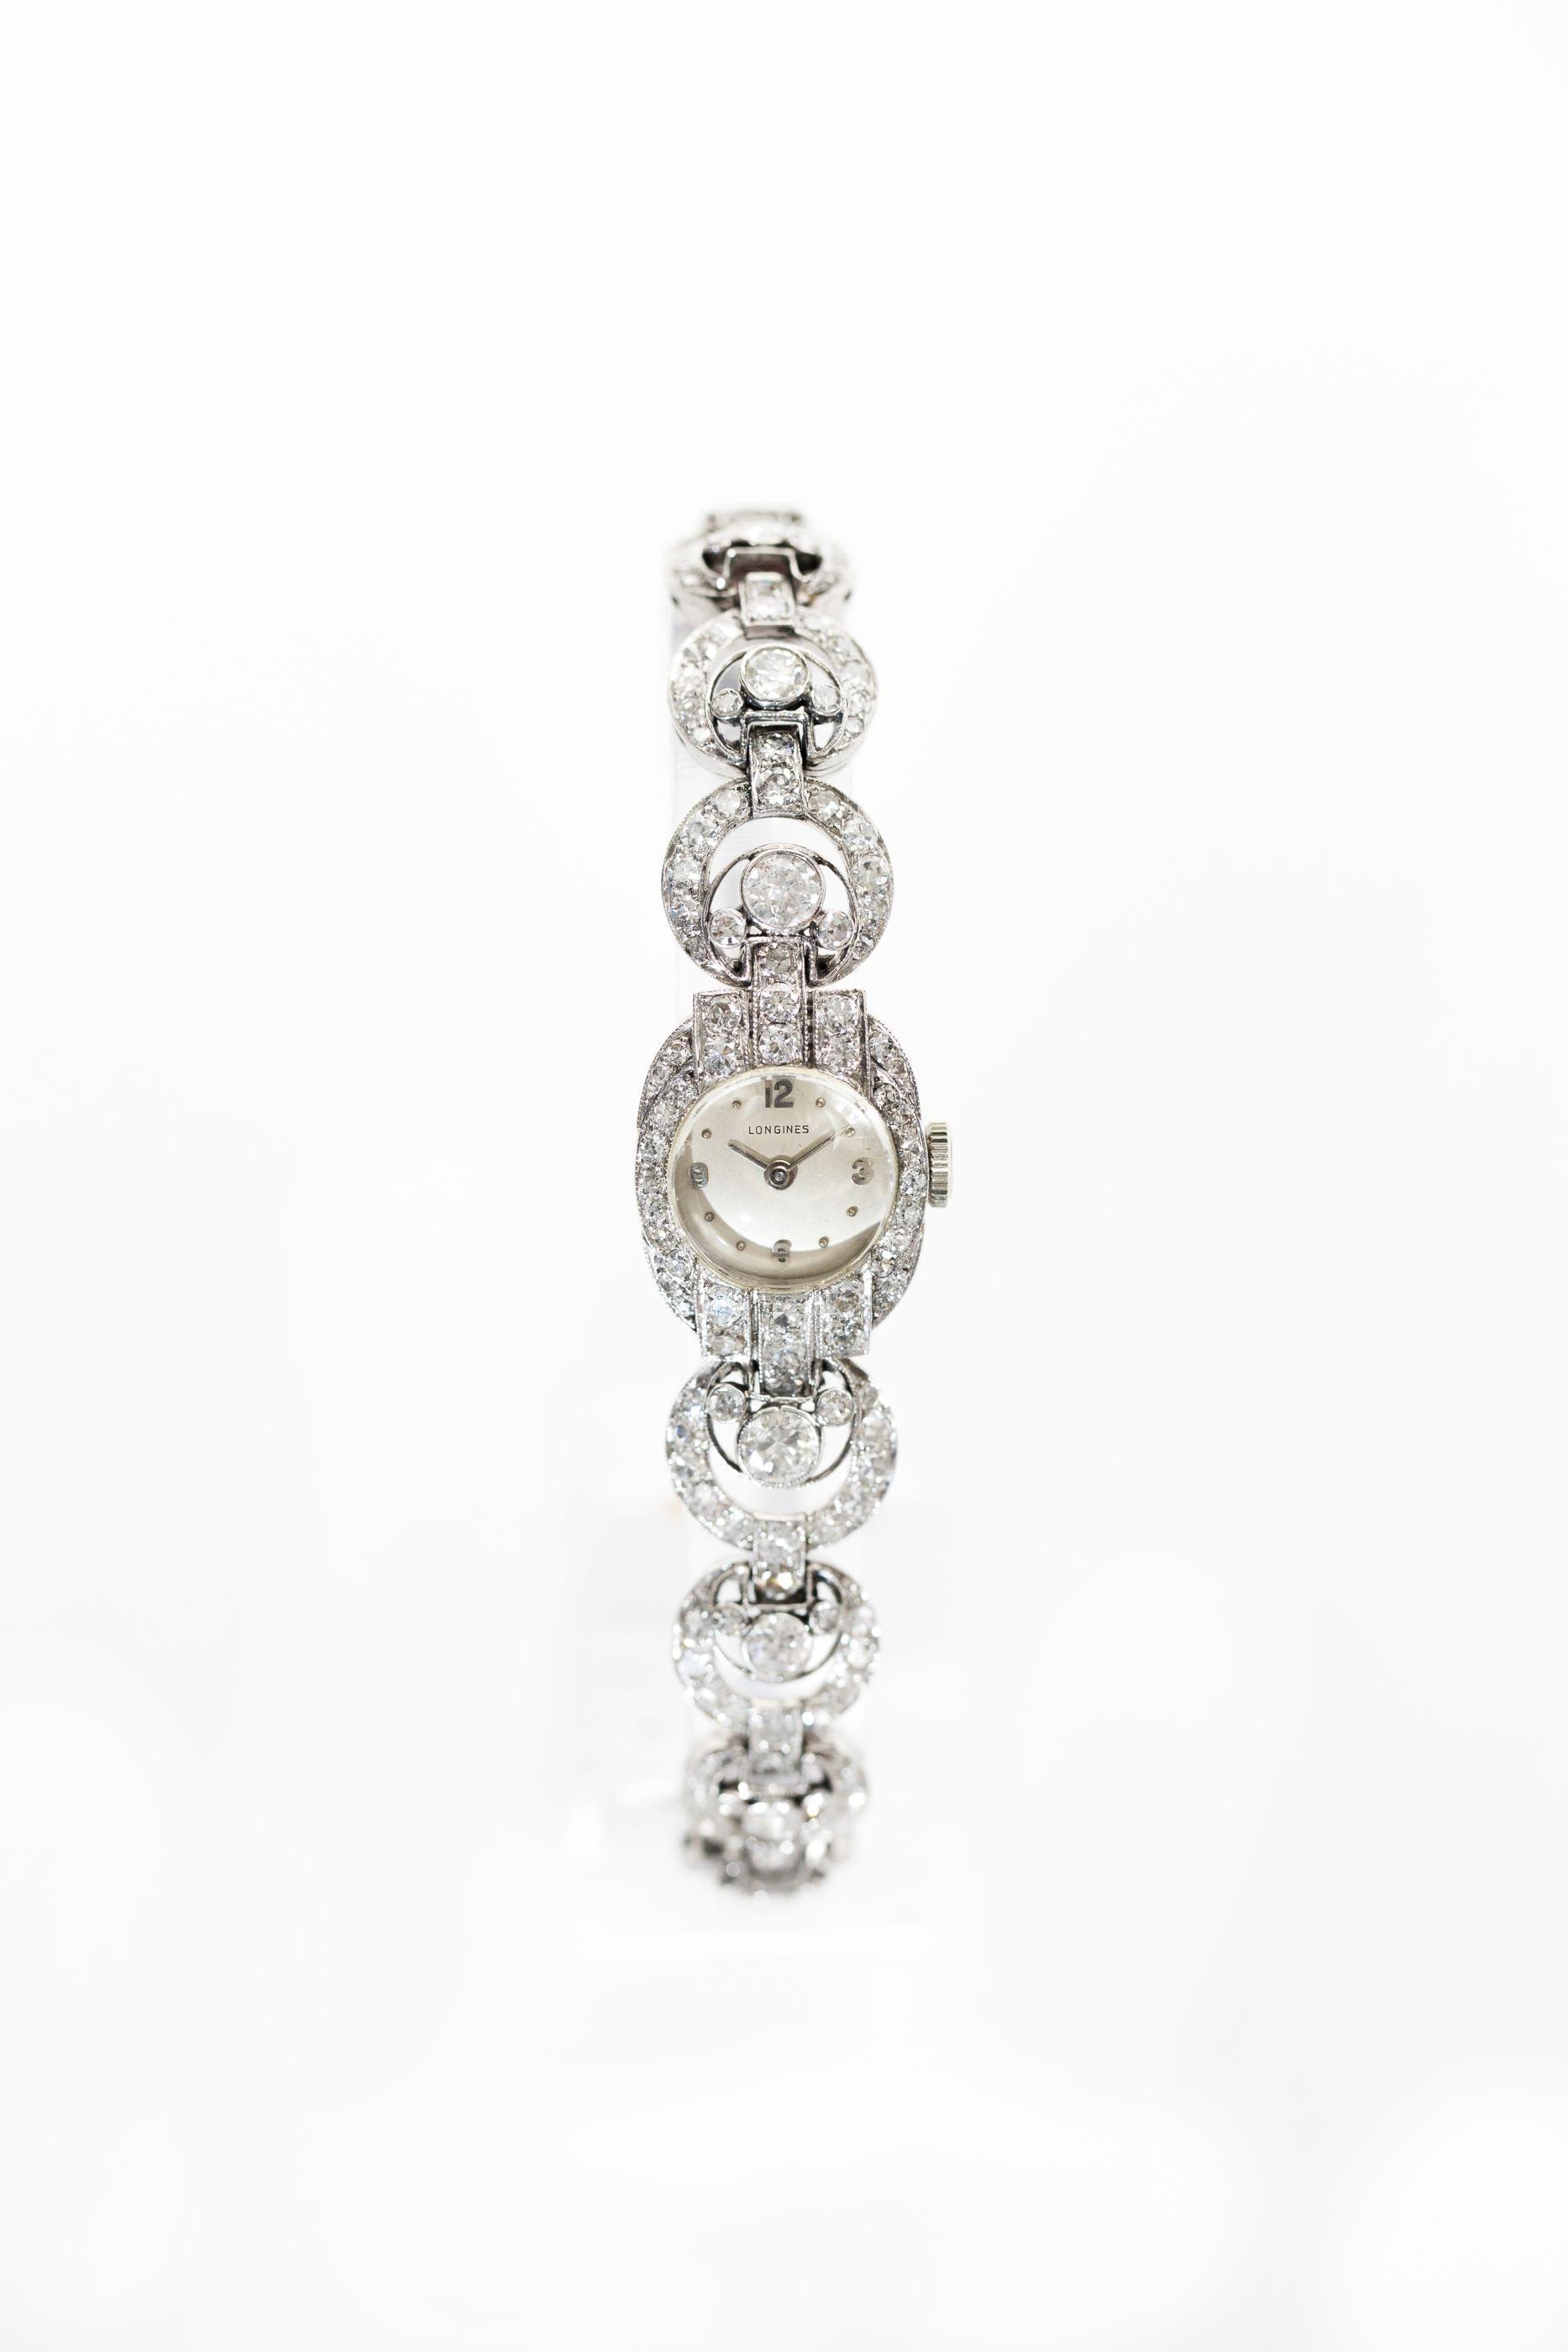 Longines, montre bracelet mécanique ovale sertie de diamants (env. 5 ct)